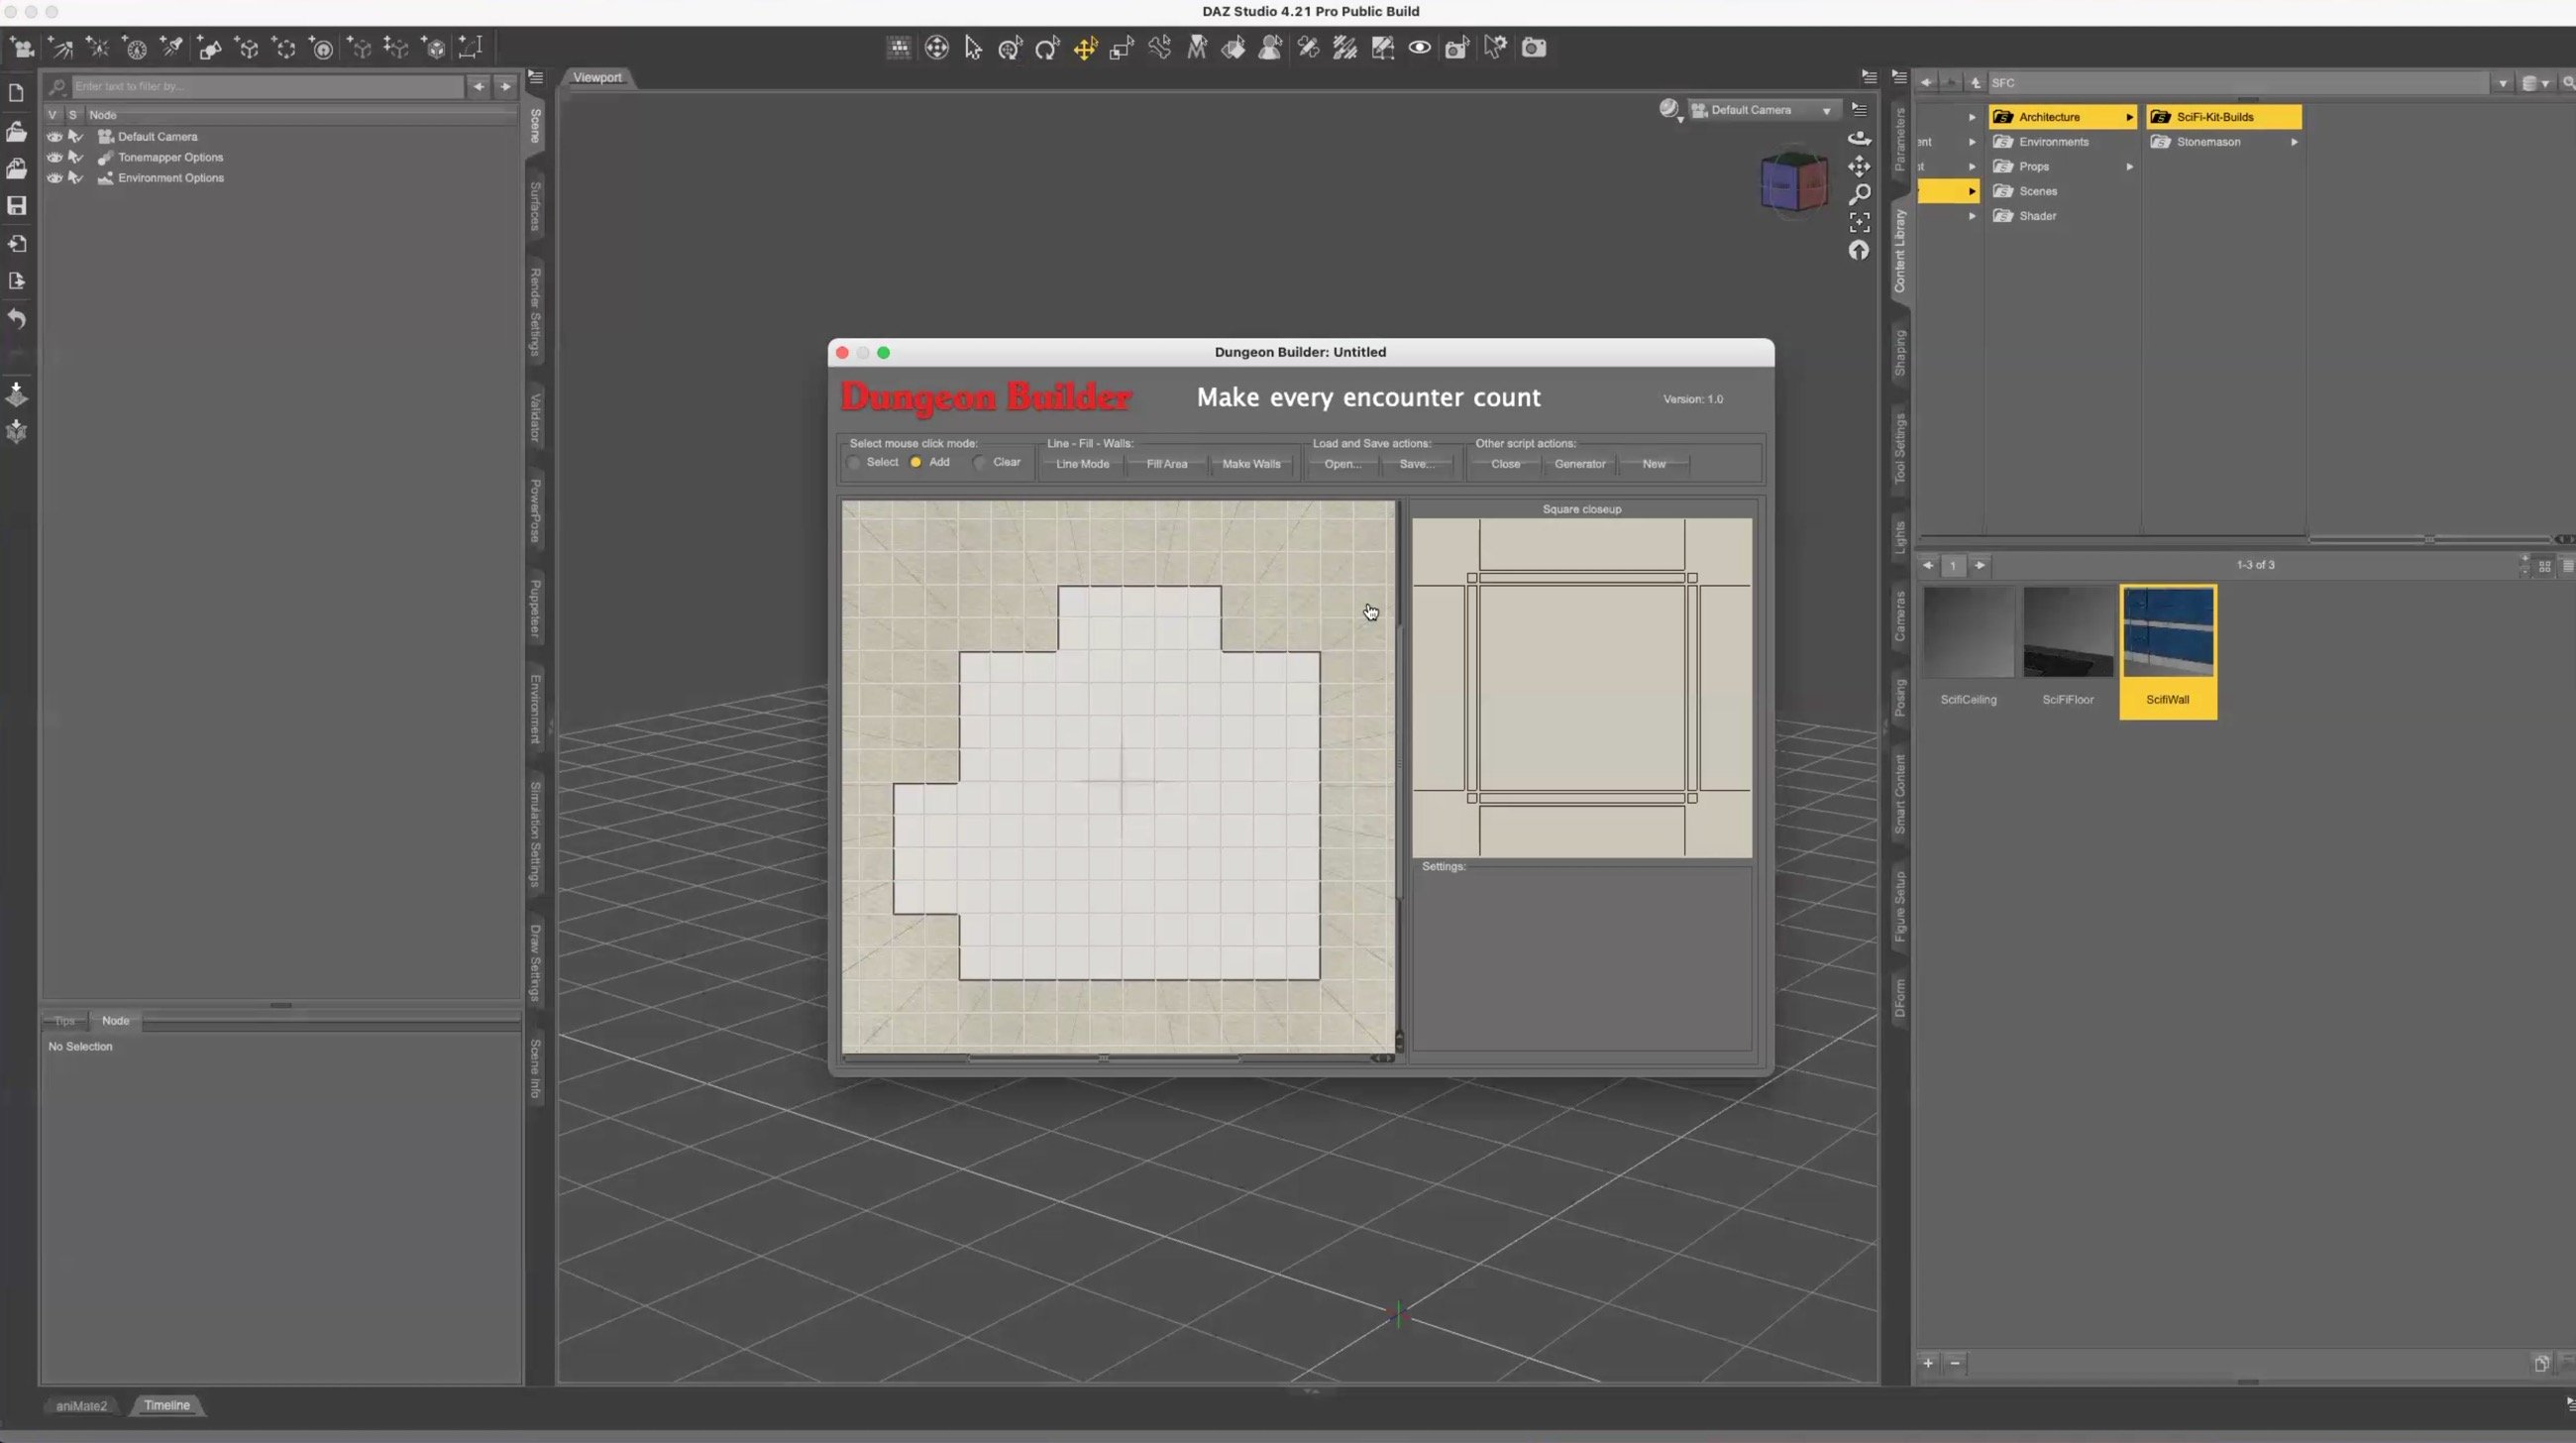 Toolbox Treasures : Super Scripts for DAZ Studio by: Digital Art LiveCode 66, 3D Models by Daz 3D